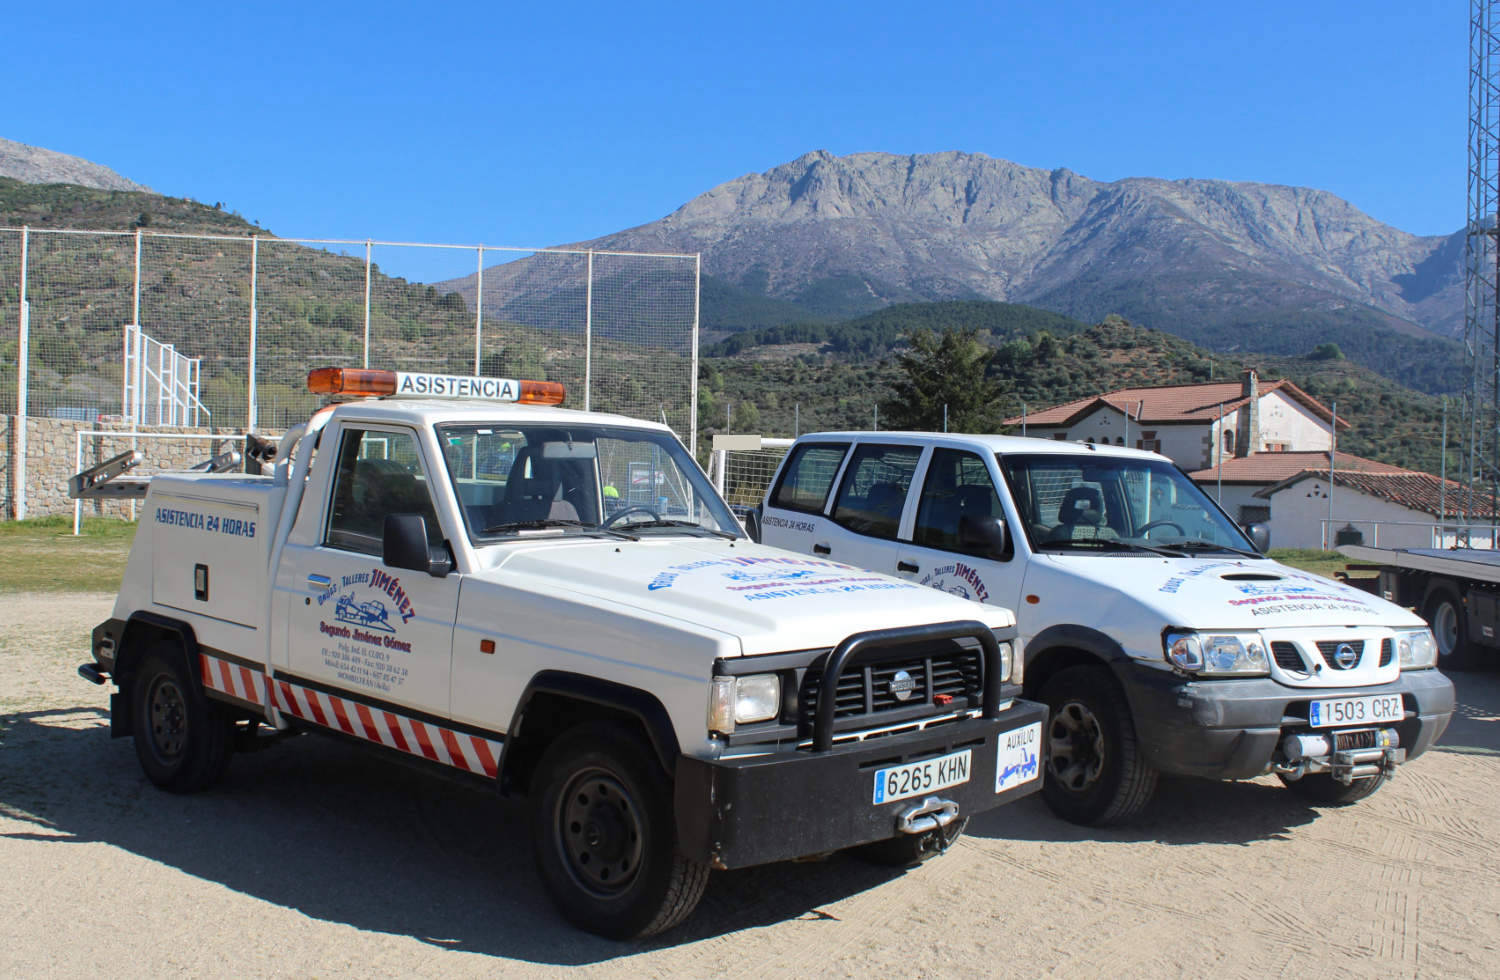 Grúas y talleres Jiménez servicio de rescate y asistencia en carretera taller mecánico móvil transporte vehículos taller reparación asistencia en viaje 24/365